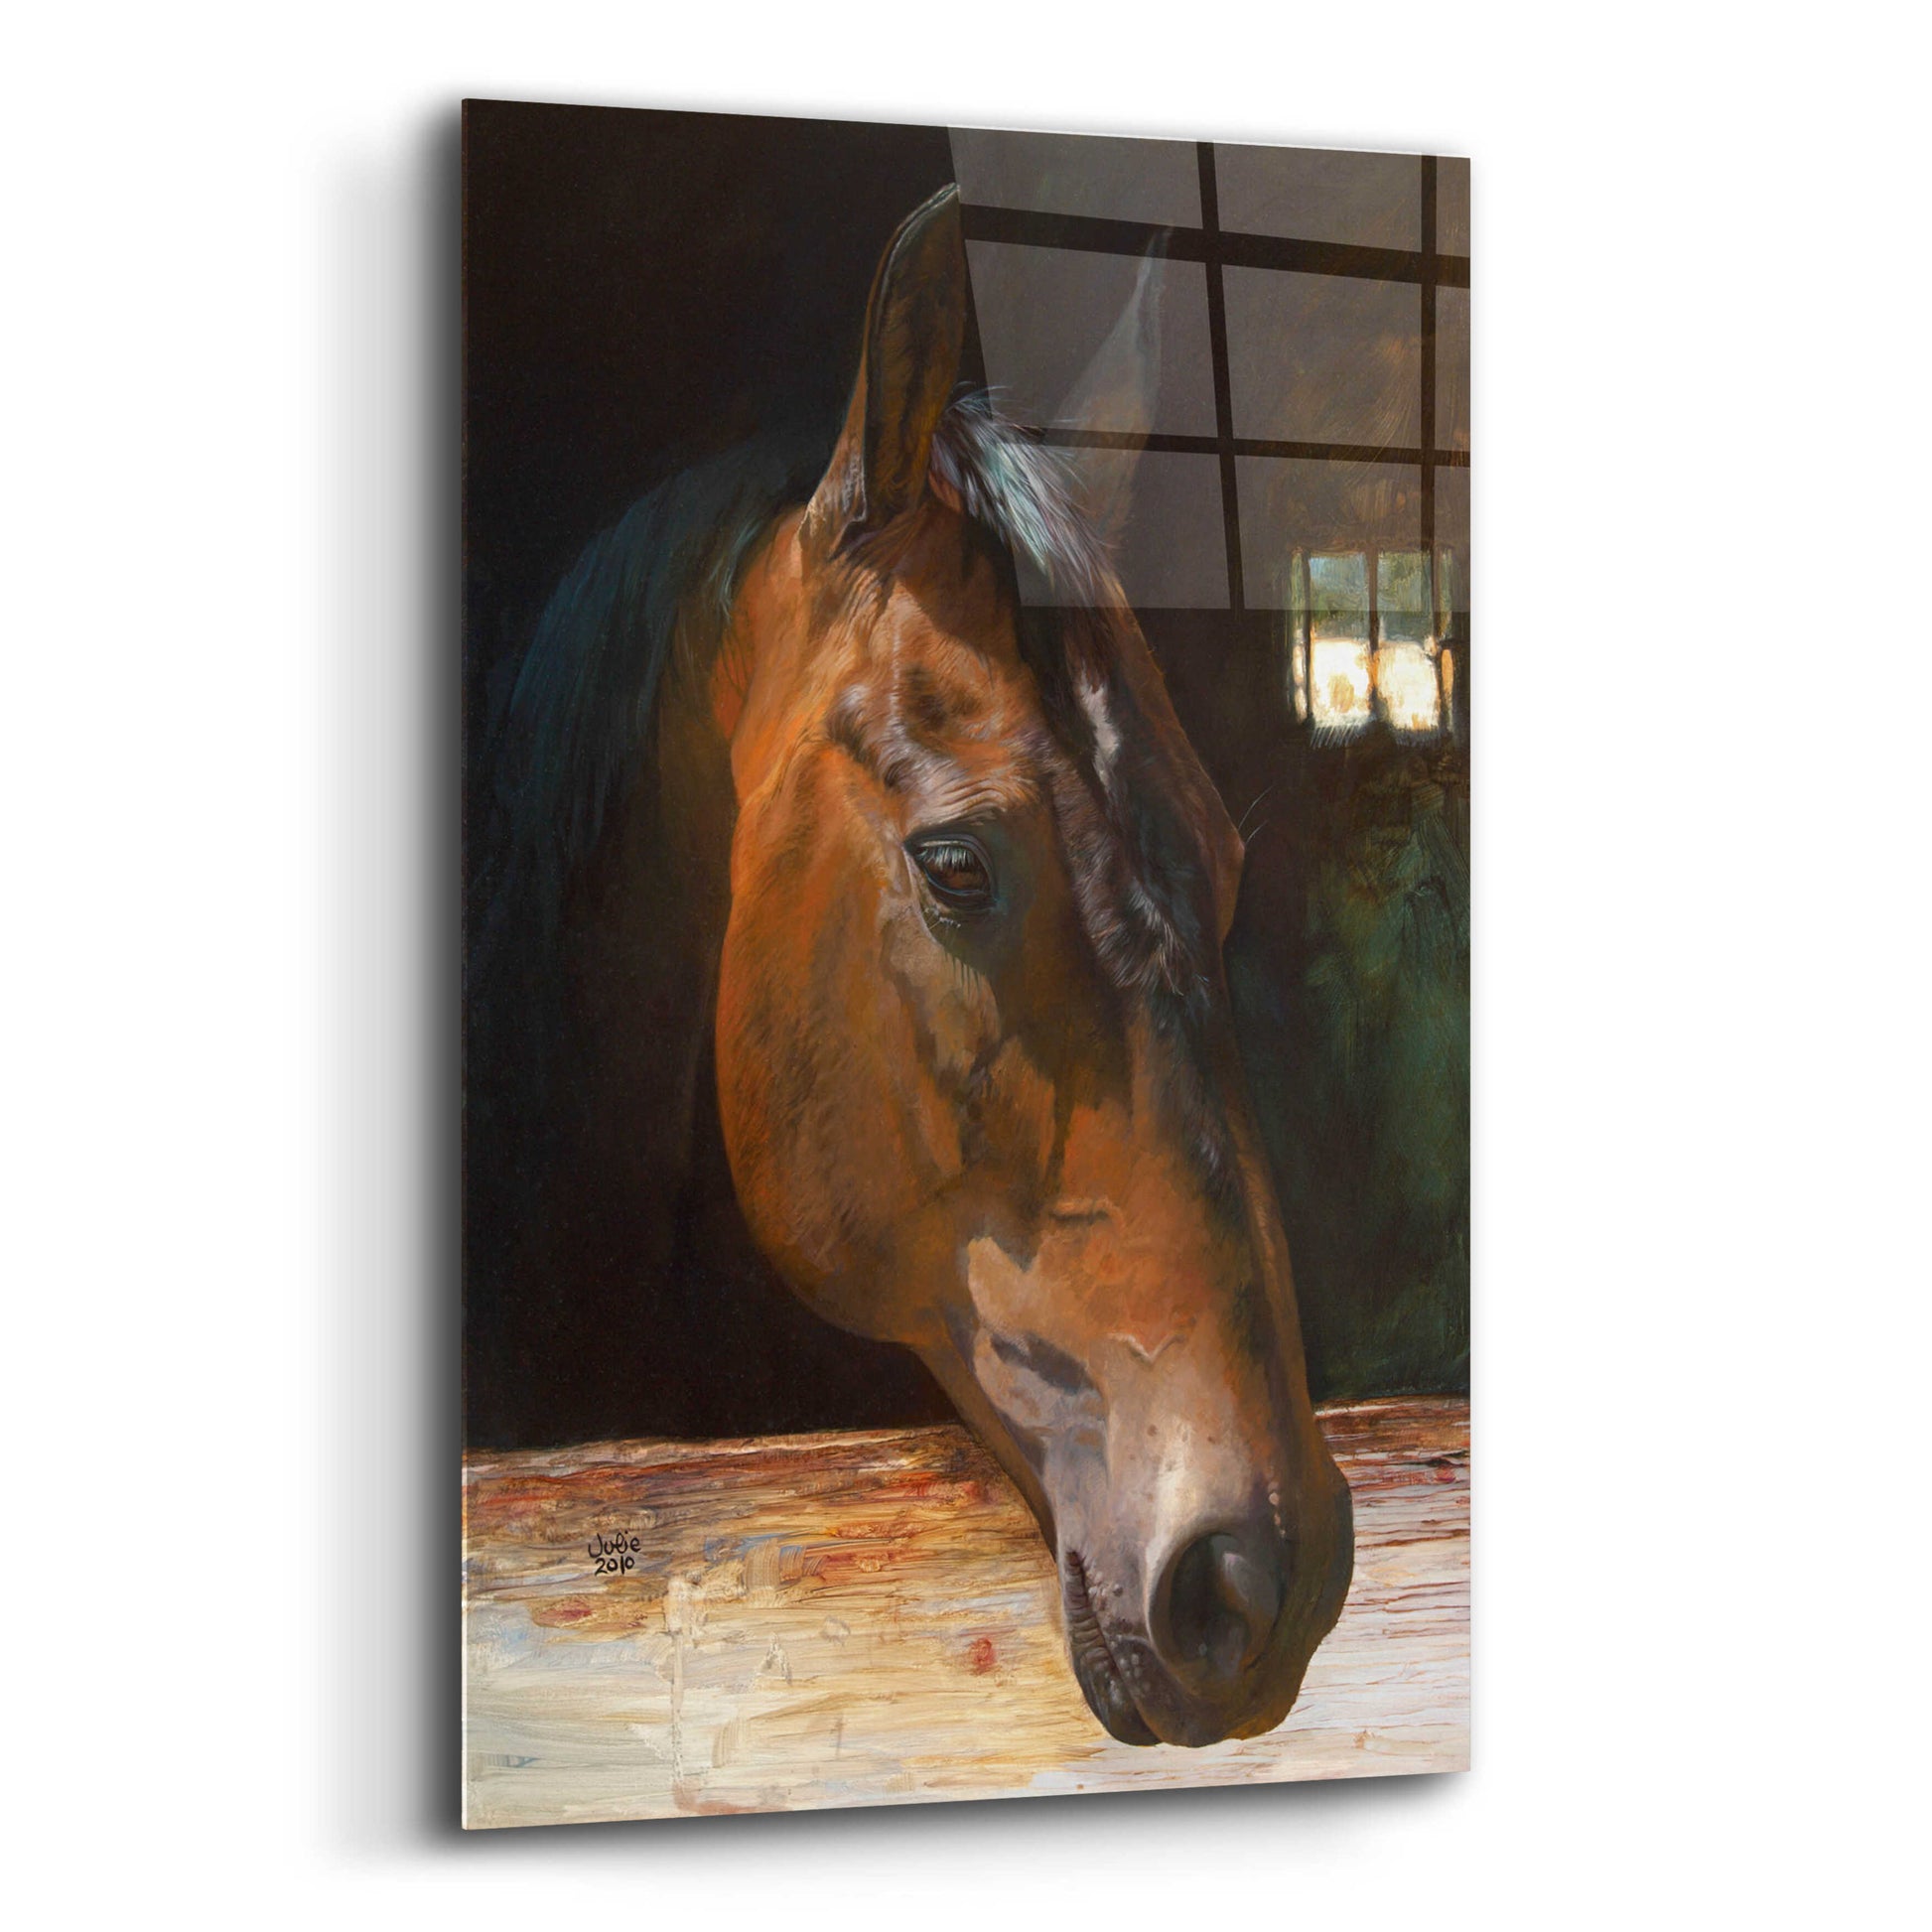 Epic Art 'Quakertown Horse' by Julie Bel, Acrylic Glass Wall Art,16x24